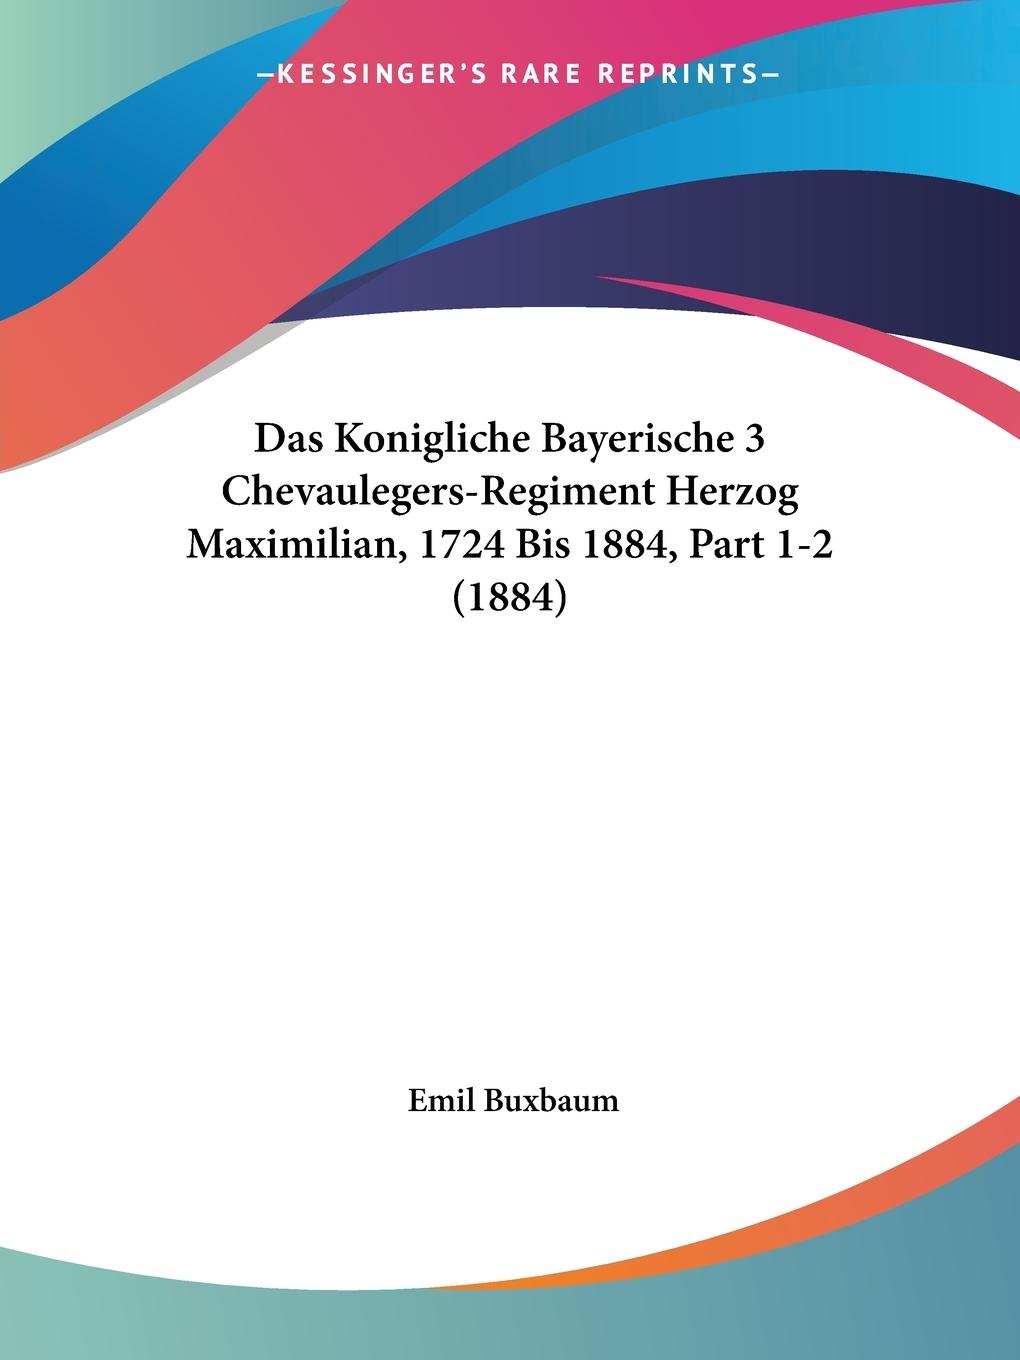 Das Konigliche Bayerische 3 Chevaulegers-Regiment Herzog Maximilian, 1724 Bis 1884, Part 1-2 (1884)